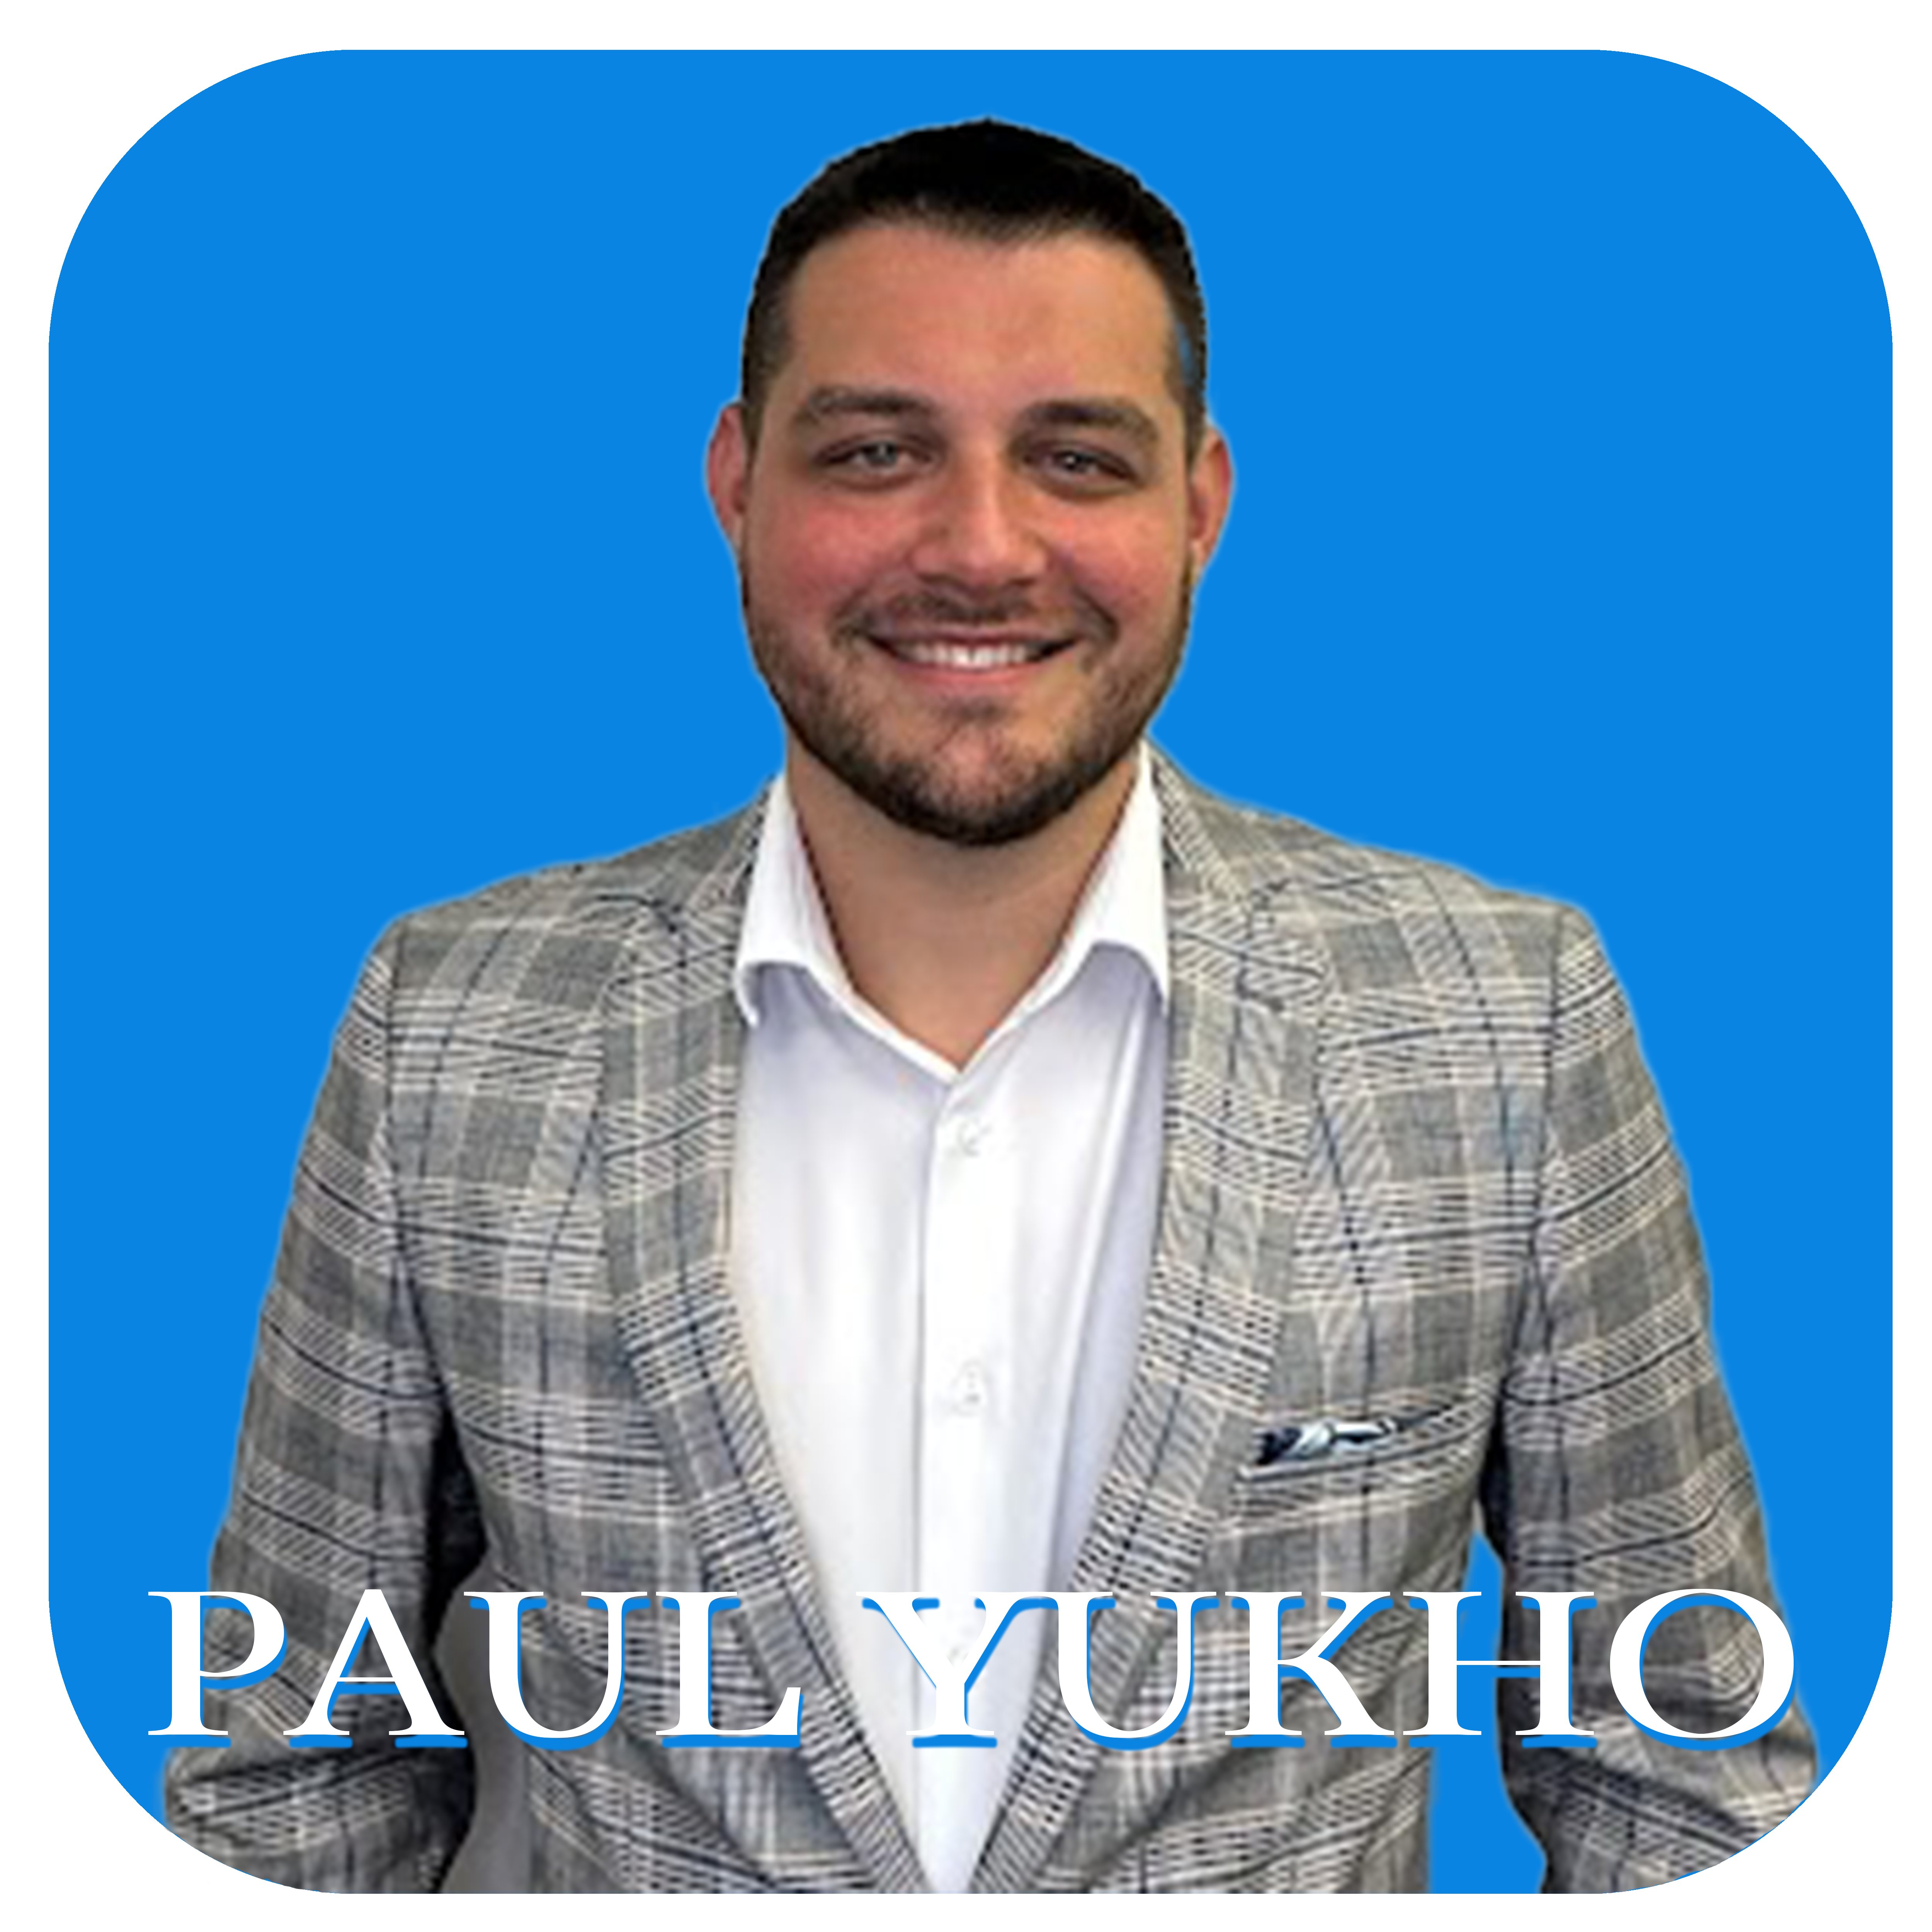 Paul Yukho